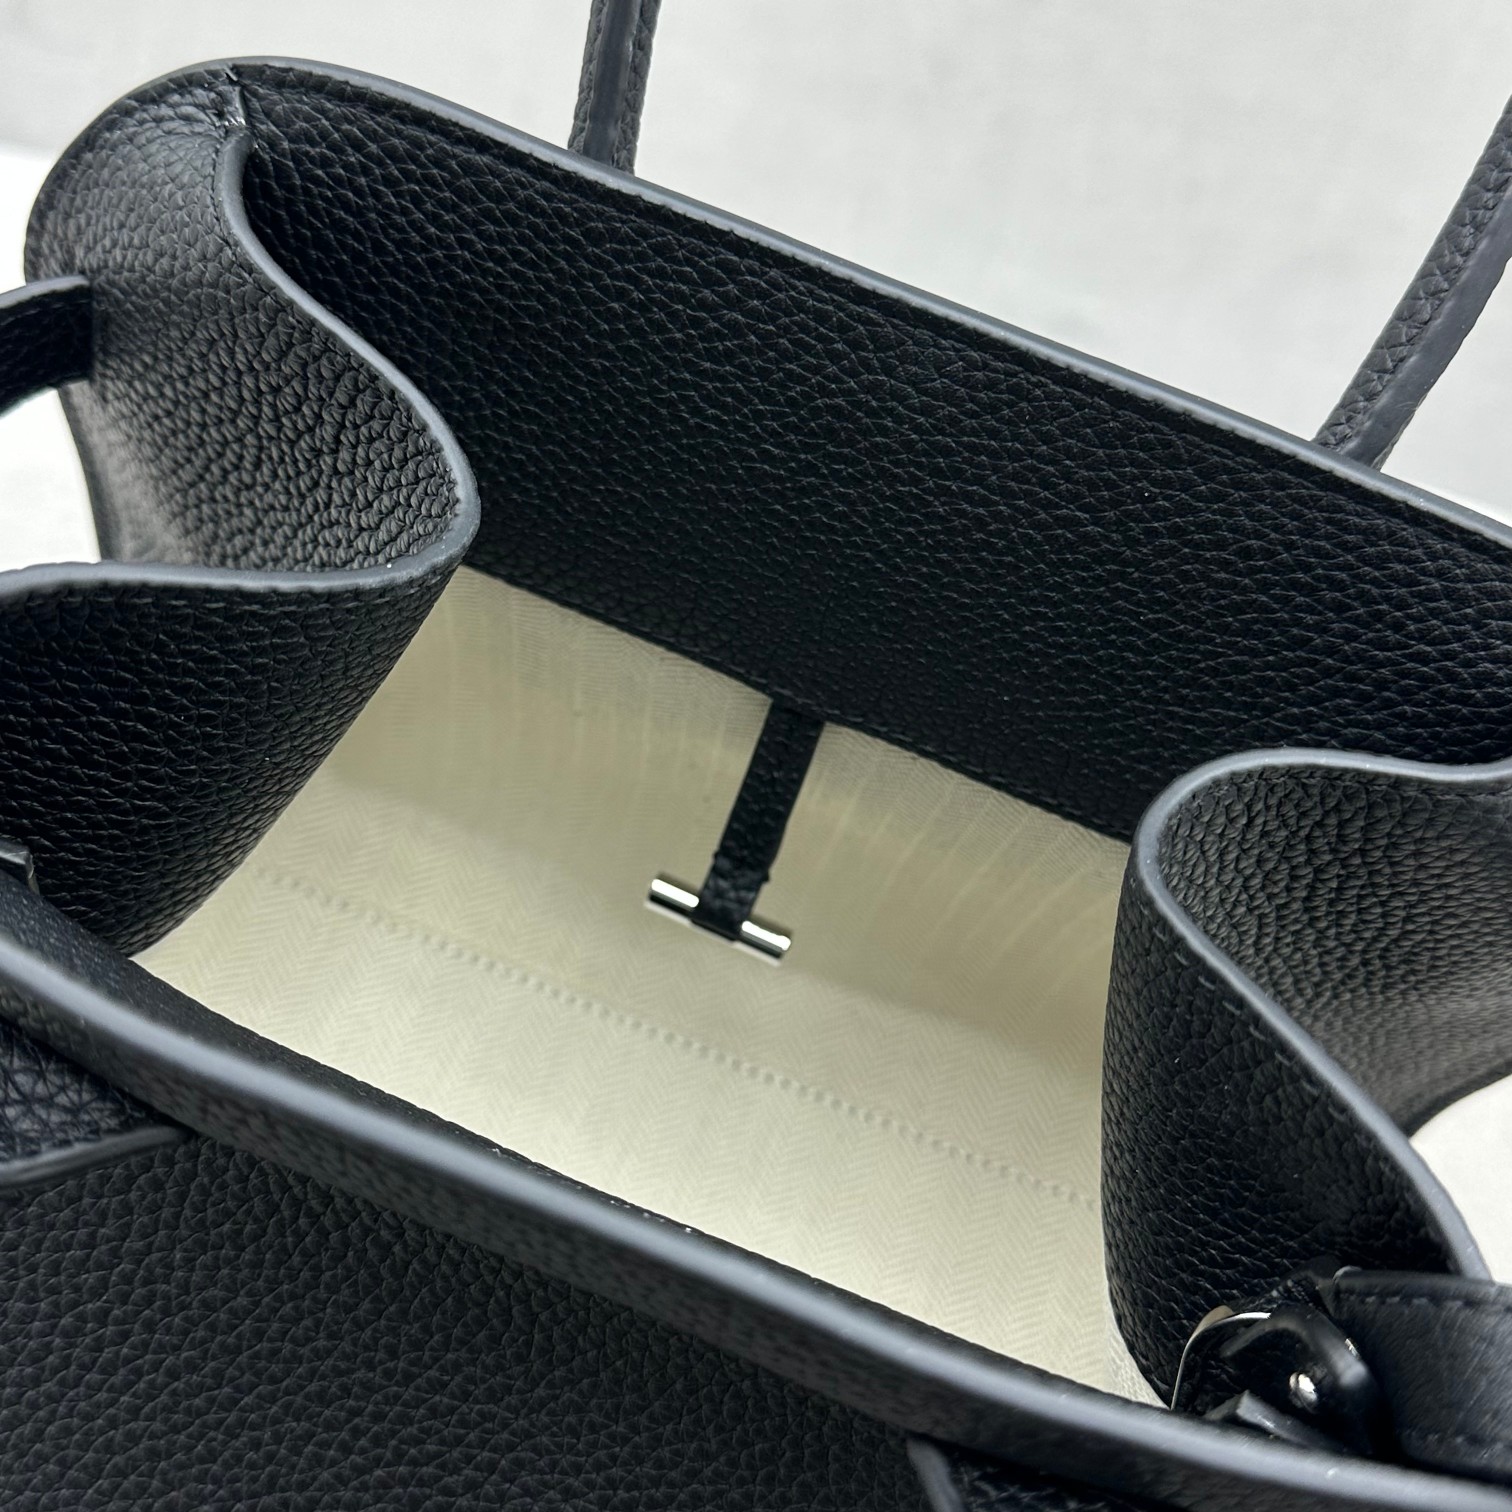 小号荔枝黑银Margaux10系列品牌在极简设计上的功力线条干净尽管没有什么logo印花的加持但整体高级